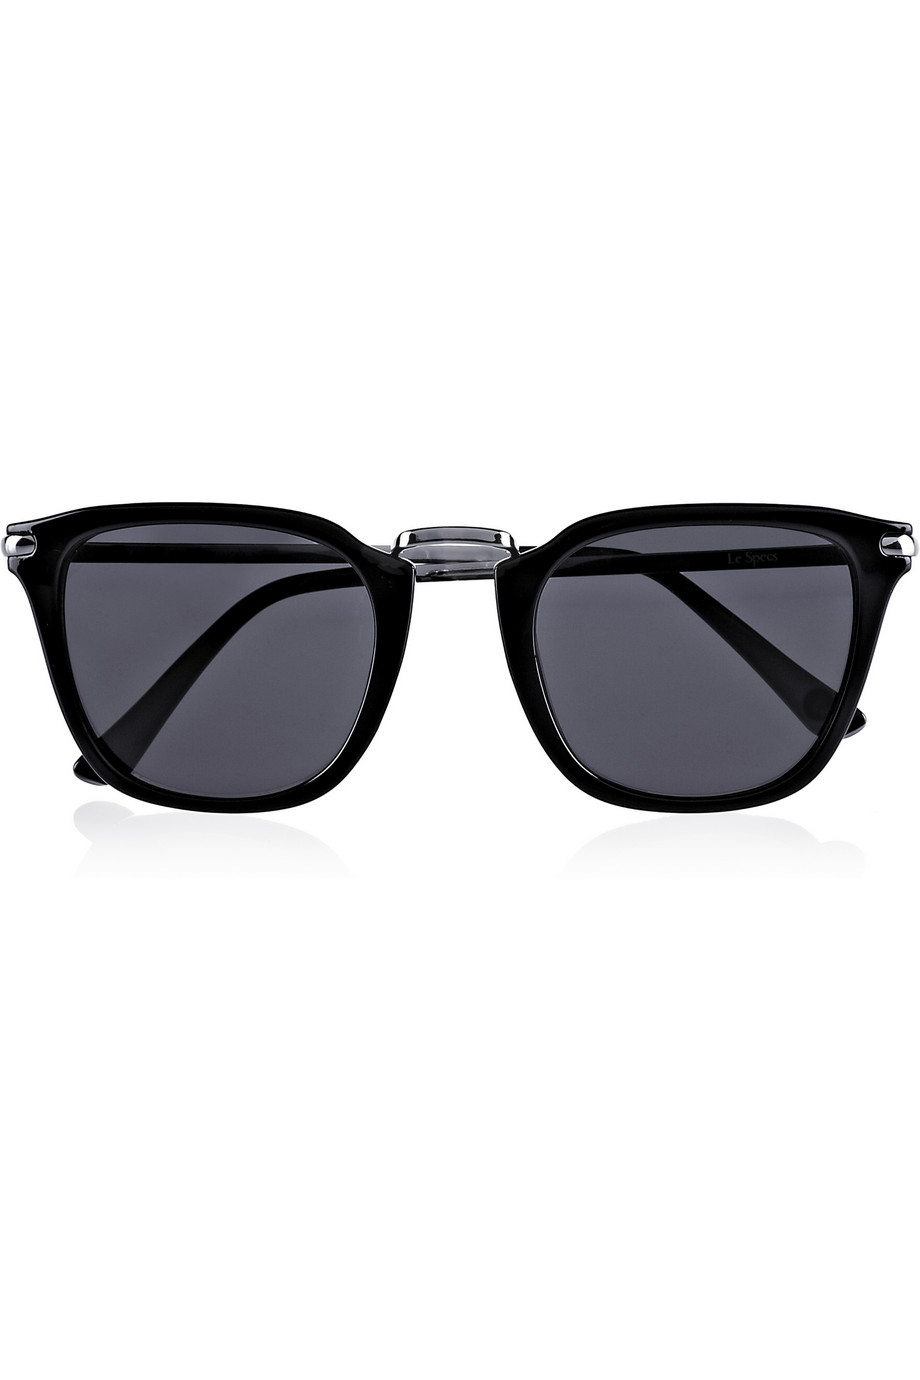 Le specs Killjoy Squareframe Sunglasses in Black | Lyst